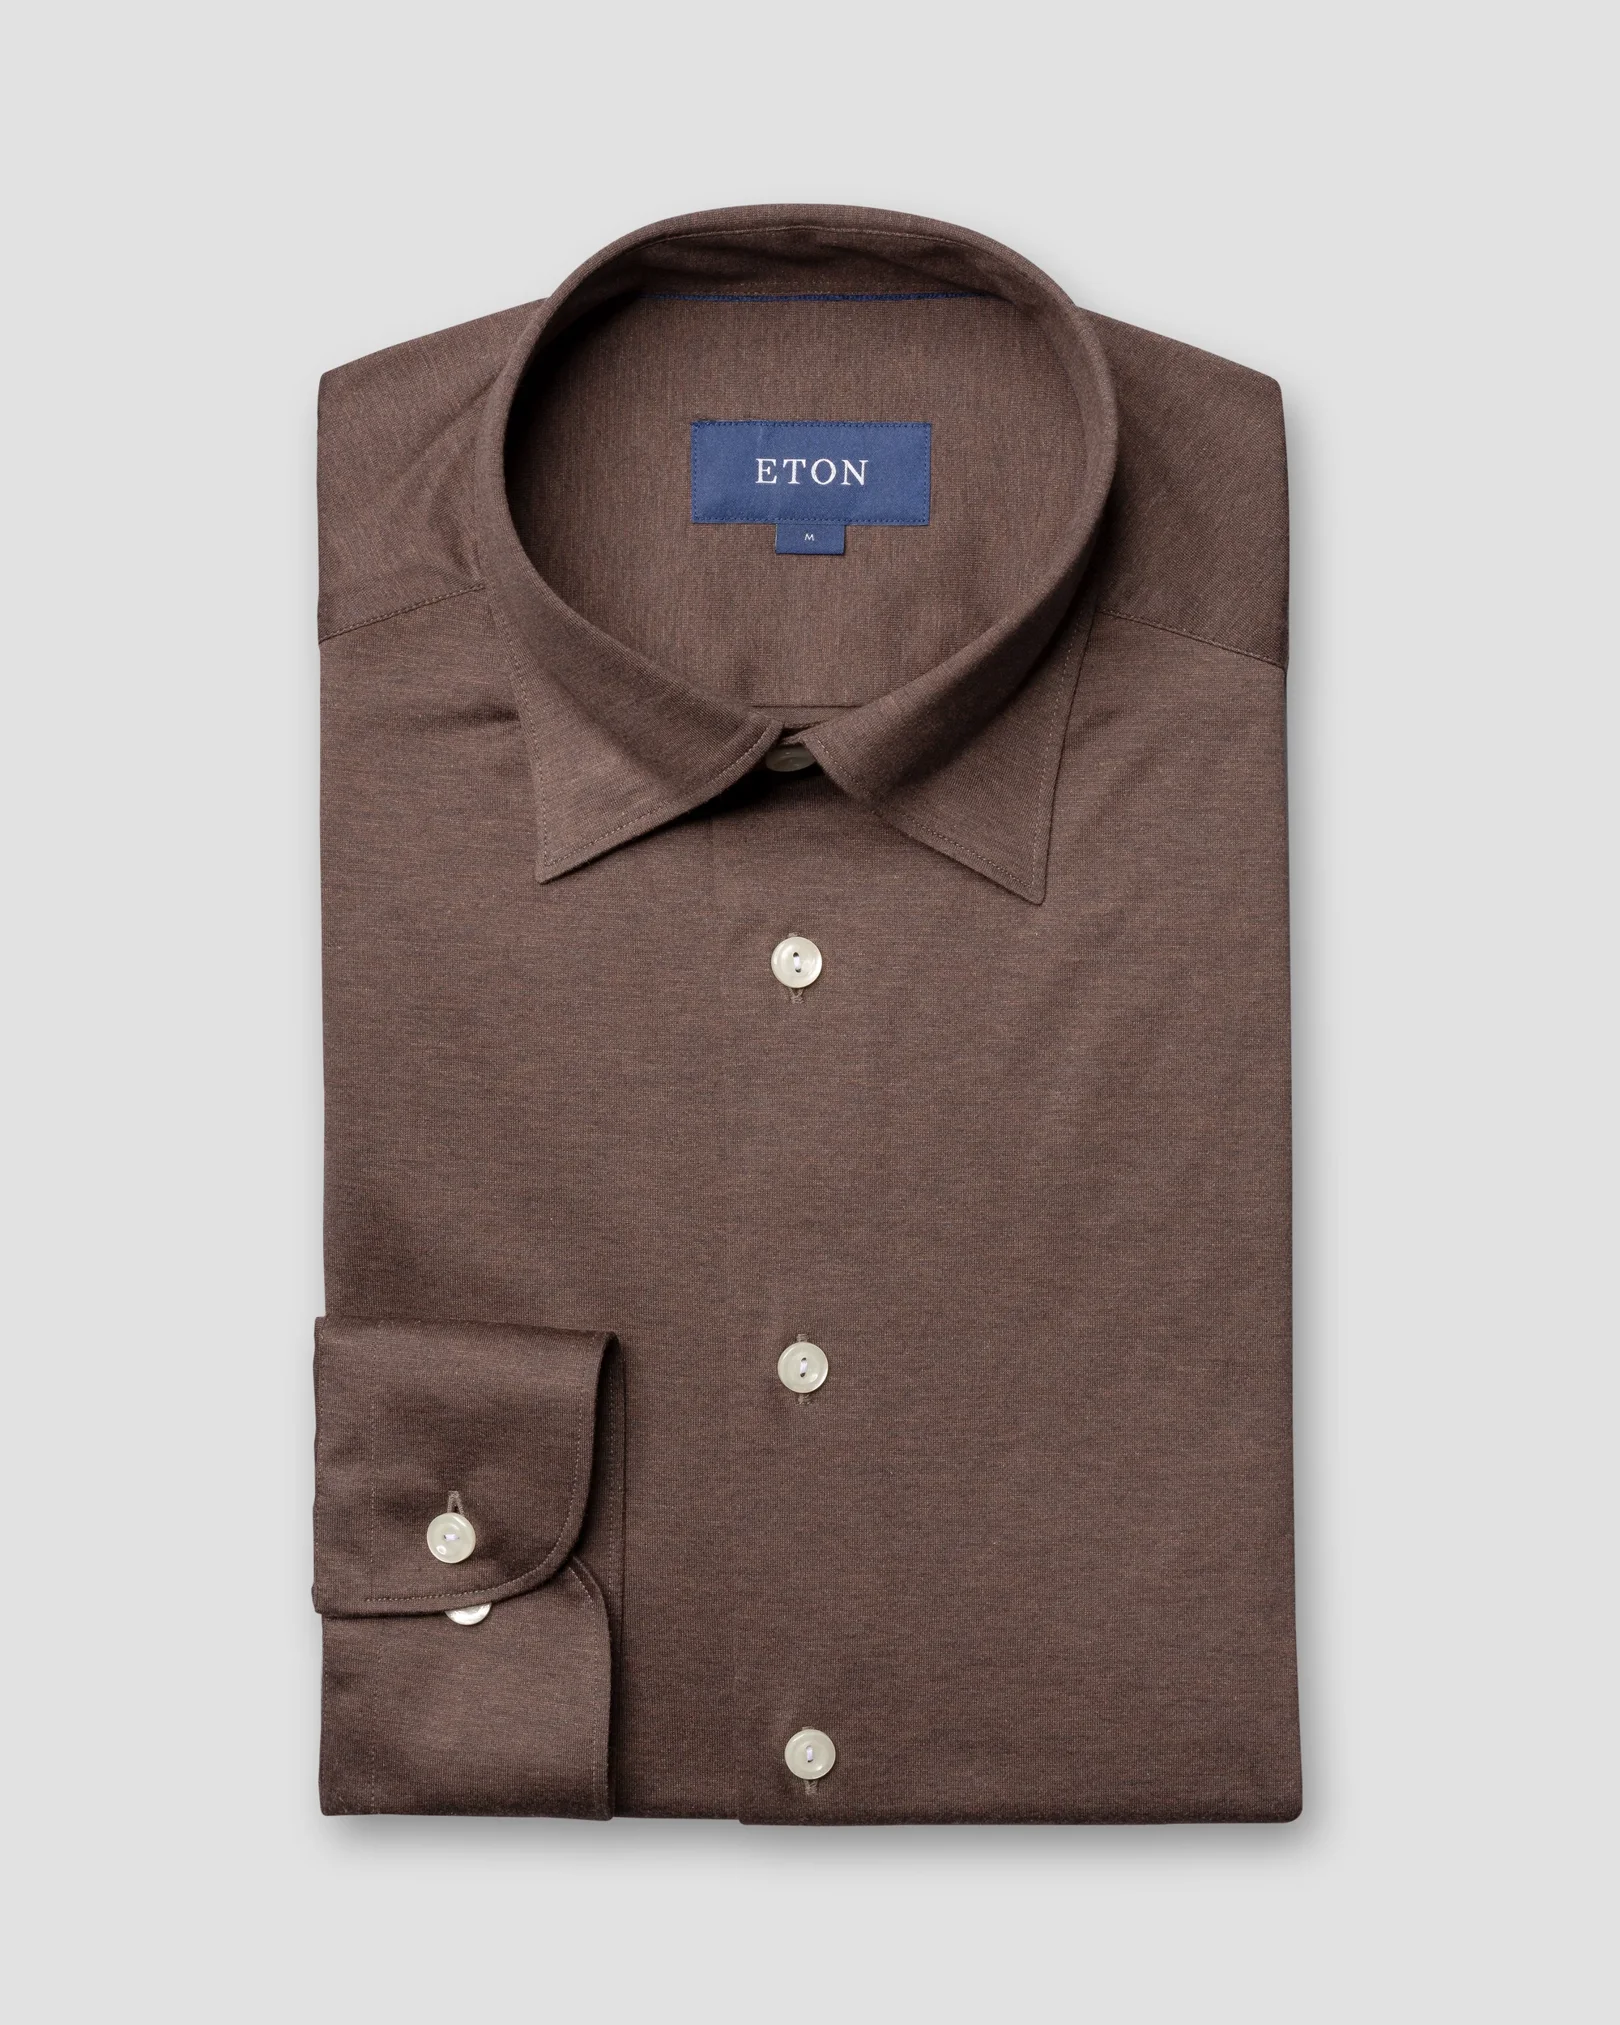 Eton - brown jersey shirt